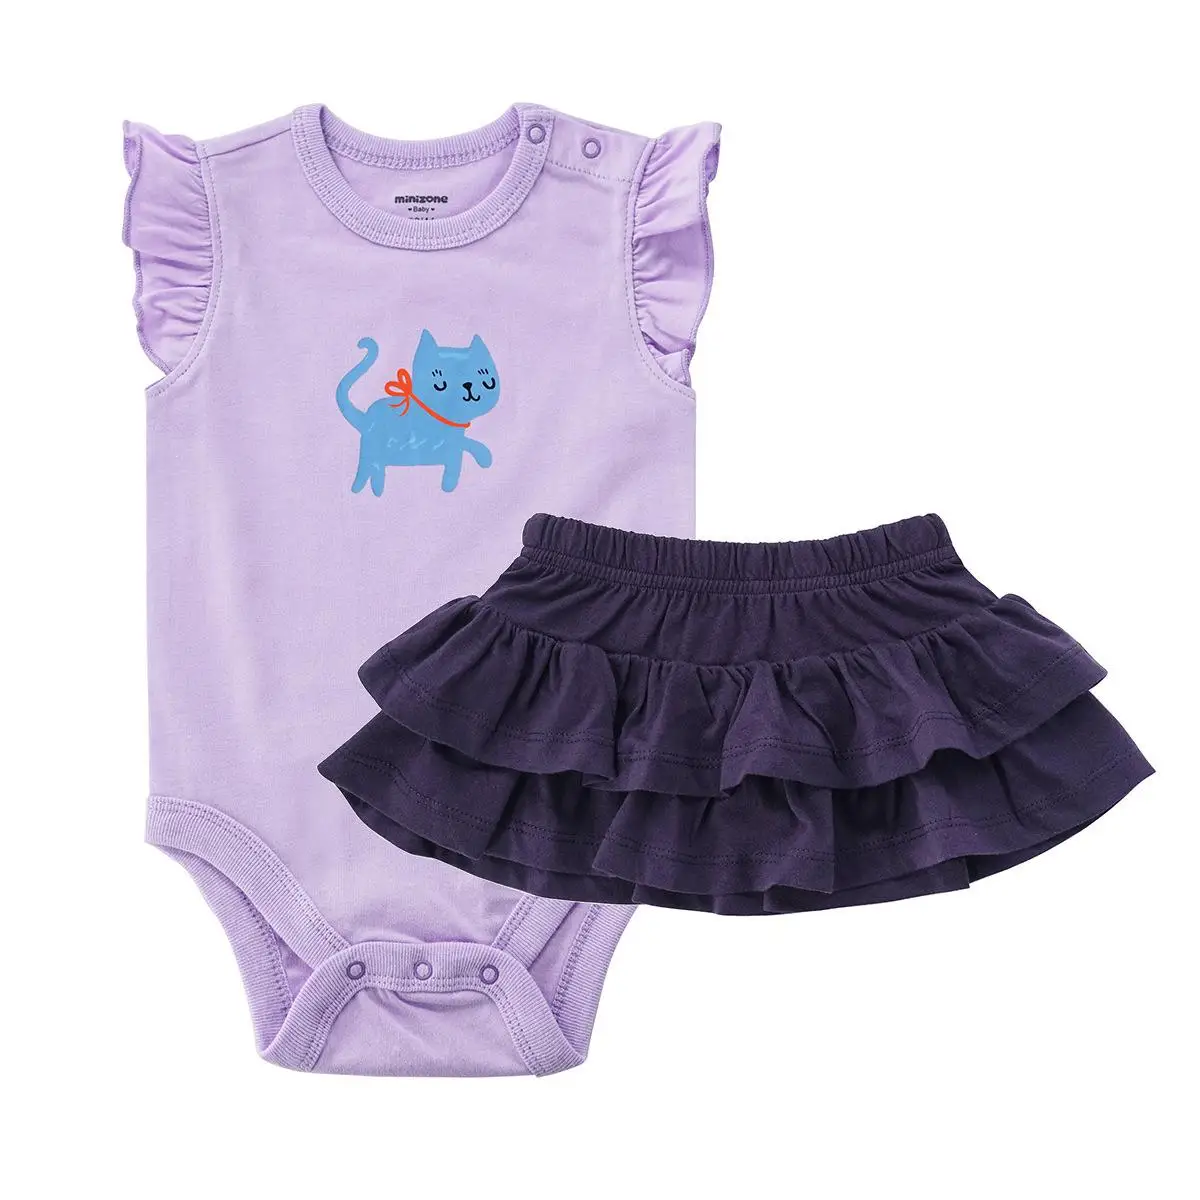 Oangemom/Официальный магазин, летняя одежда для младенцев Юбка для маленьких девочек боди с дизайном «Принцесса»+ юбка комплект из двух предметов комплект одежды для маленьких девочек - Color: purple